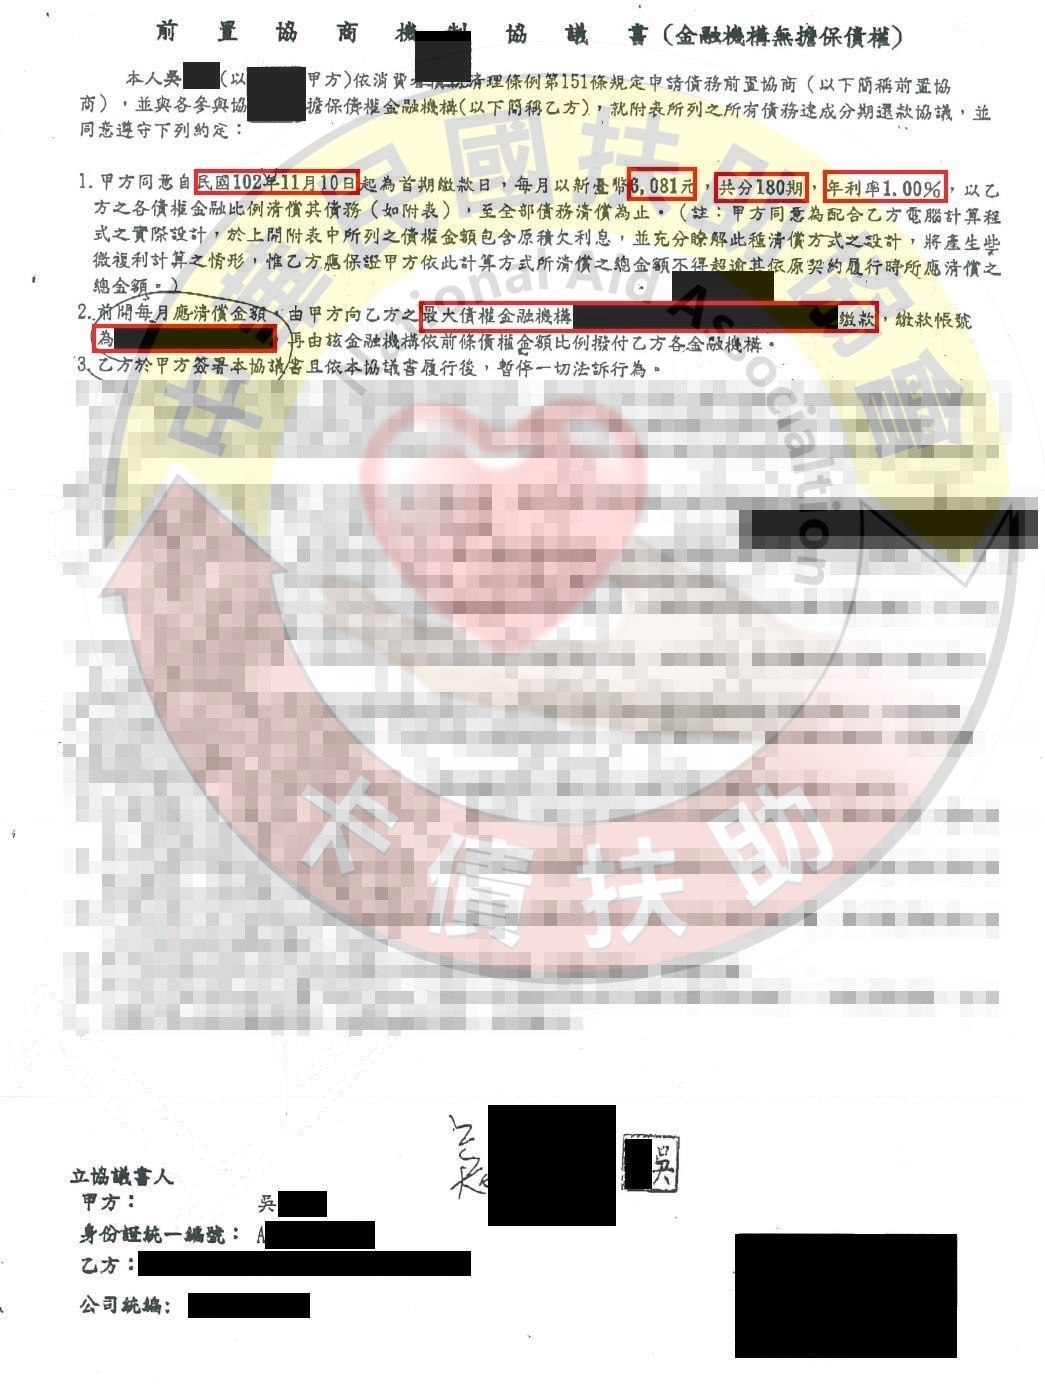 新北吳小姐-協商成功依180期1%月付6,081元